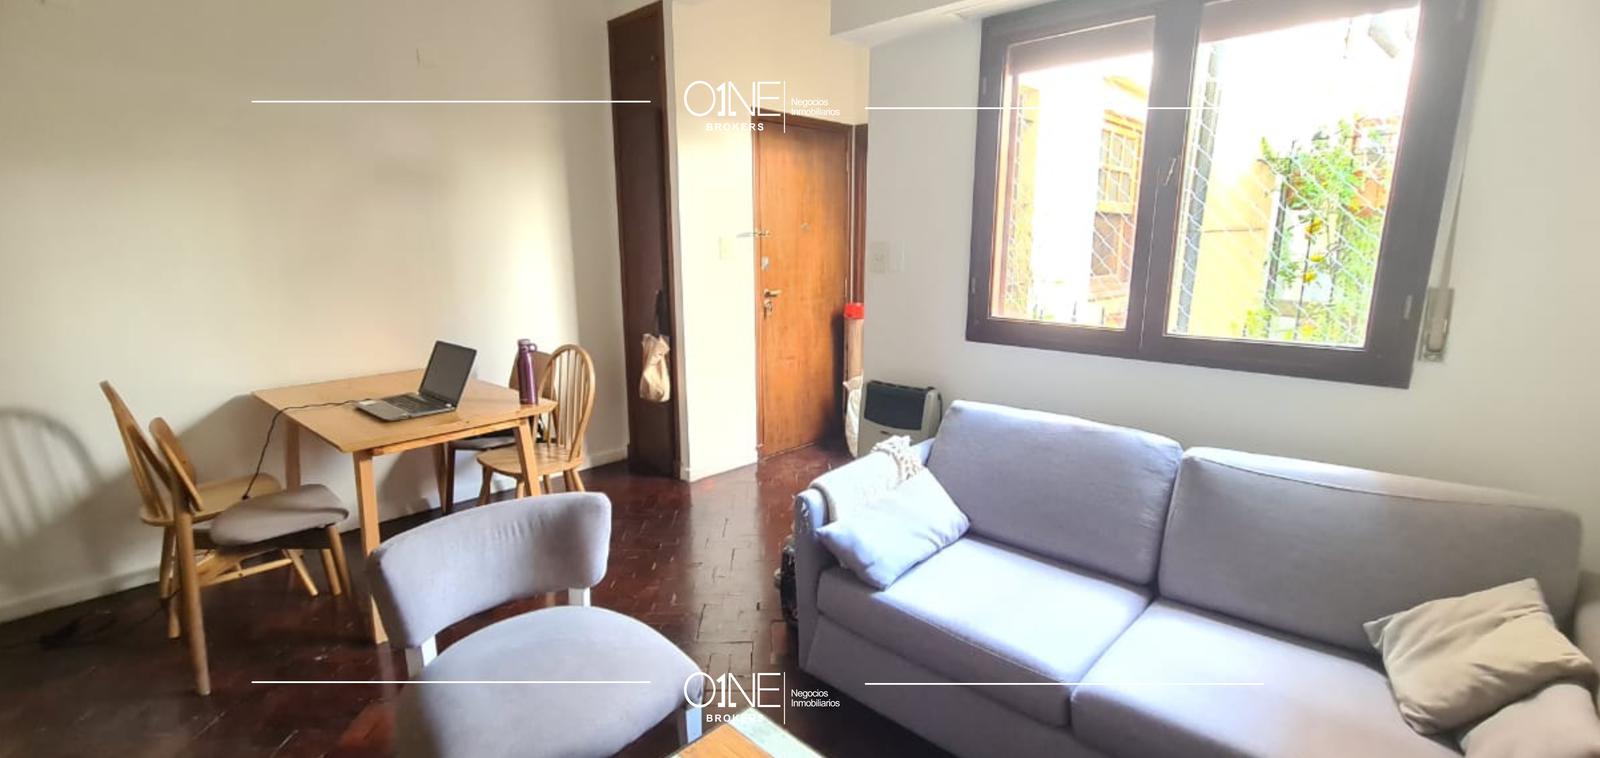 #5162179 | Rental | Apartment | Belgrano (O1NE BROKERS Sociedad Ley 19.550)